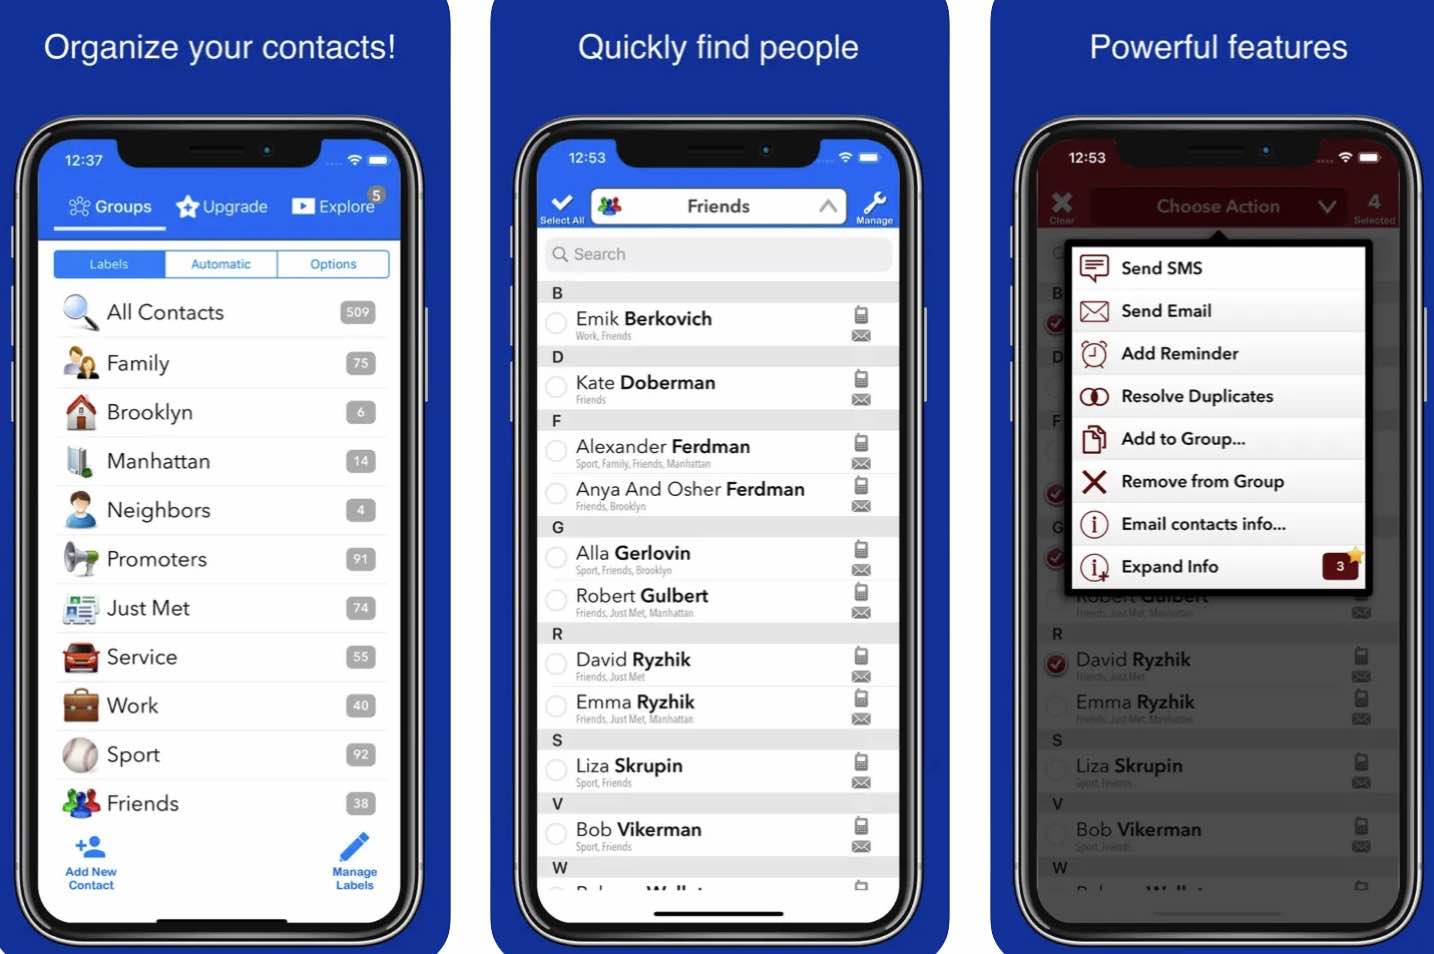 Przydatne aplikacje, które pomogą Ci zarządzać kontaktami na iPhone poradniki, gry-i-aplikacje, ciekawostki zarządzanie kontaktami, wizytówki, synchronizacja, skanowanie, My Contacts Backup, Książka adresowa, kopie zapasowe, Kopia zapasowa moich kontaktów, kontakty, iPhone, Grupy, grupowanie kontaktów, CircleBack, CamCard, aktualizacja kontaktów  W dzisiejszych czasach smartfony pełnią rolę nie tylko telefonów, ale także małych komputerów, które umożliwiają nam organizację wielu aspektów życia codziennego. k4